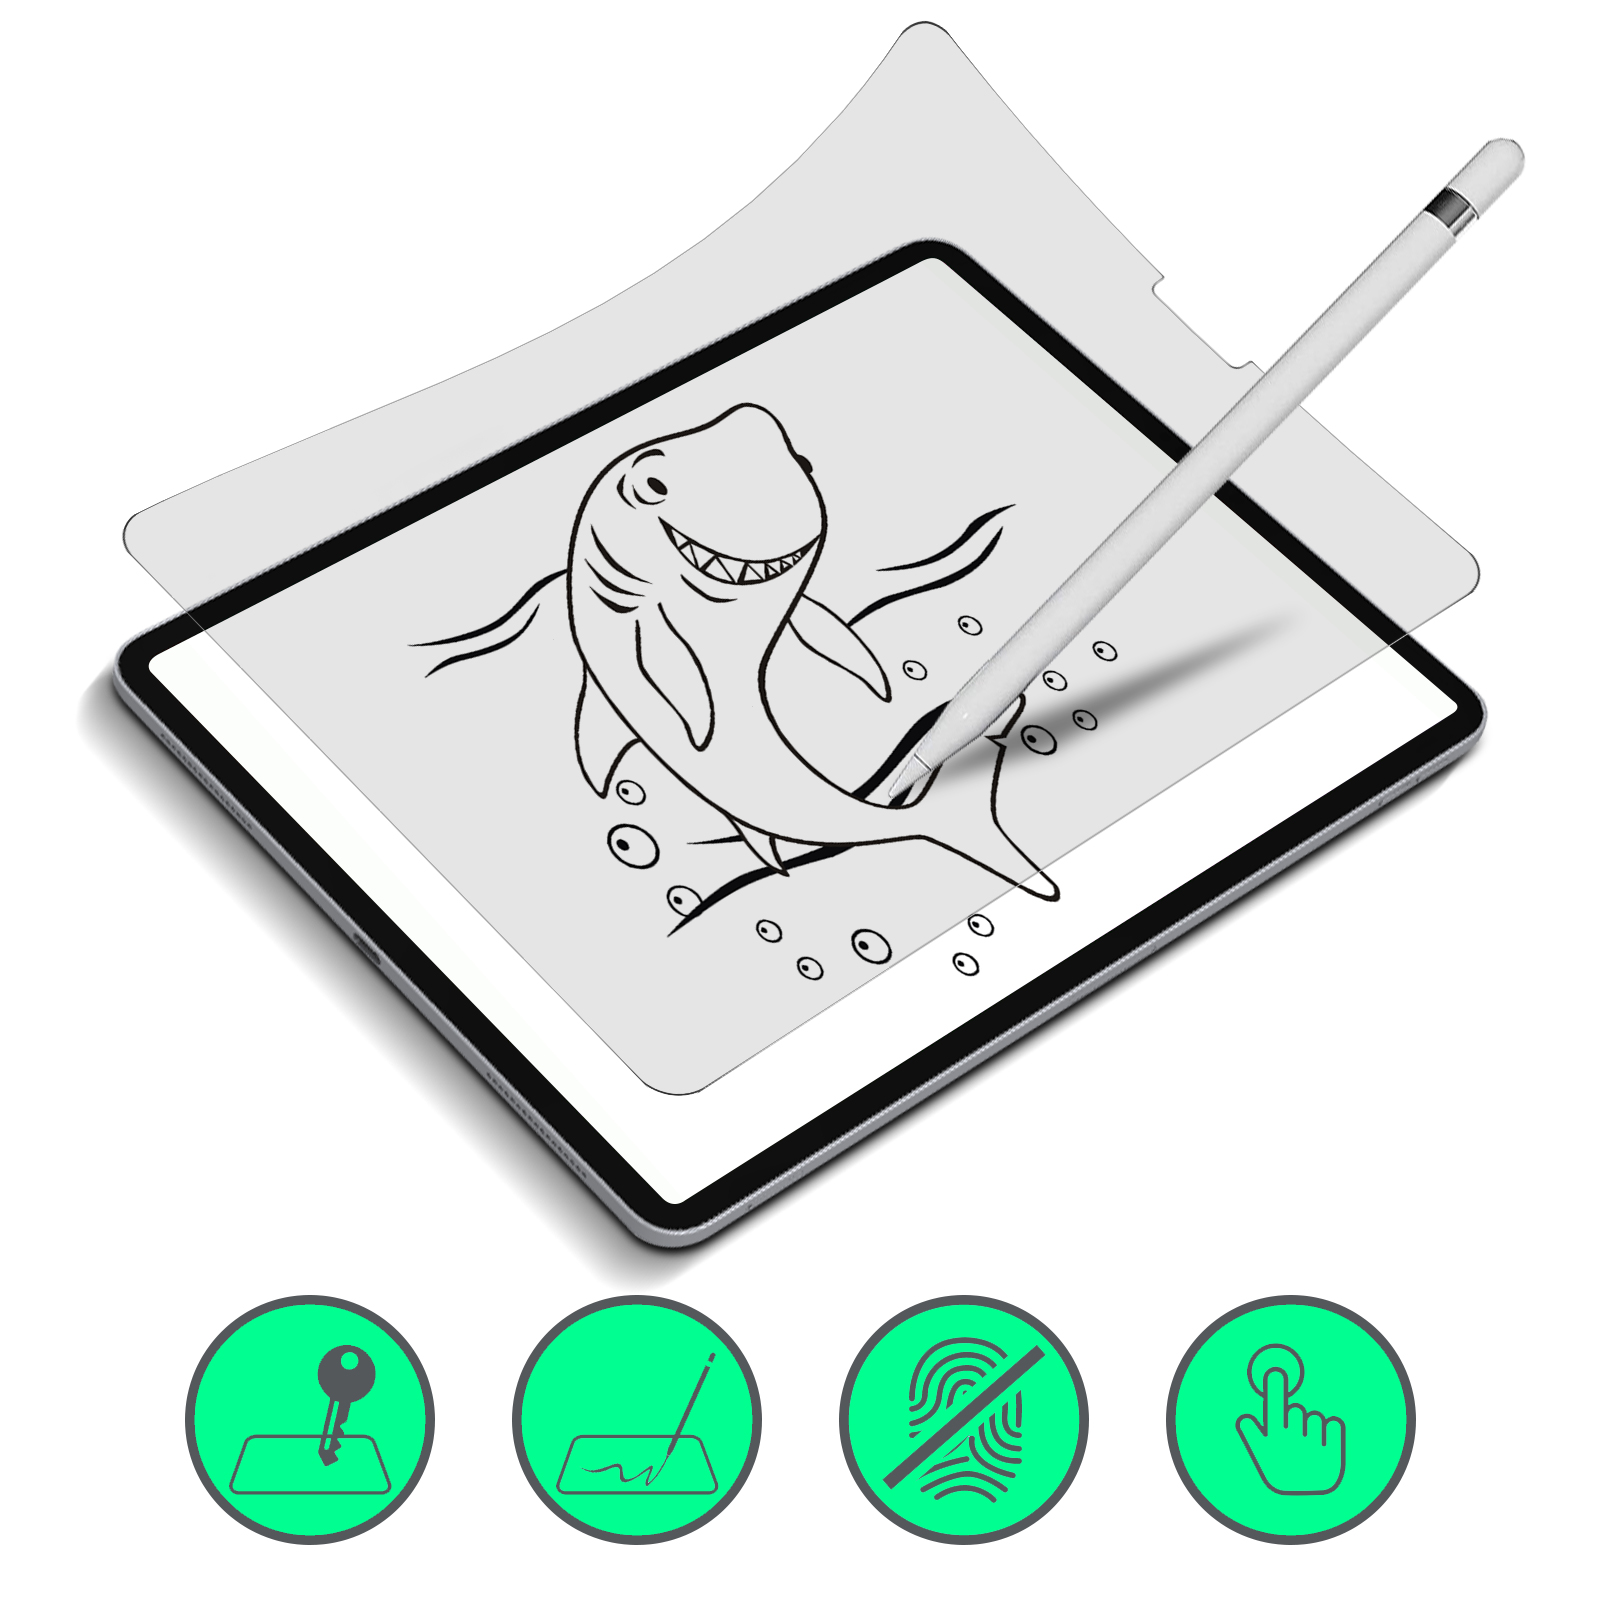 Comment choisir le meilleur protecteur d'écran pour l'iPad Air 5